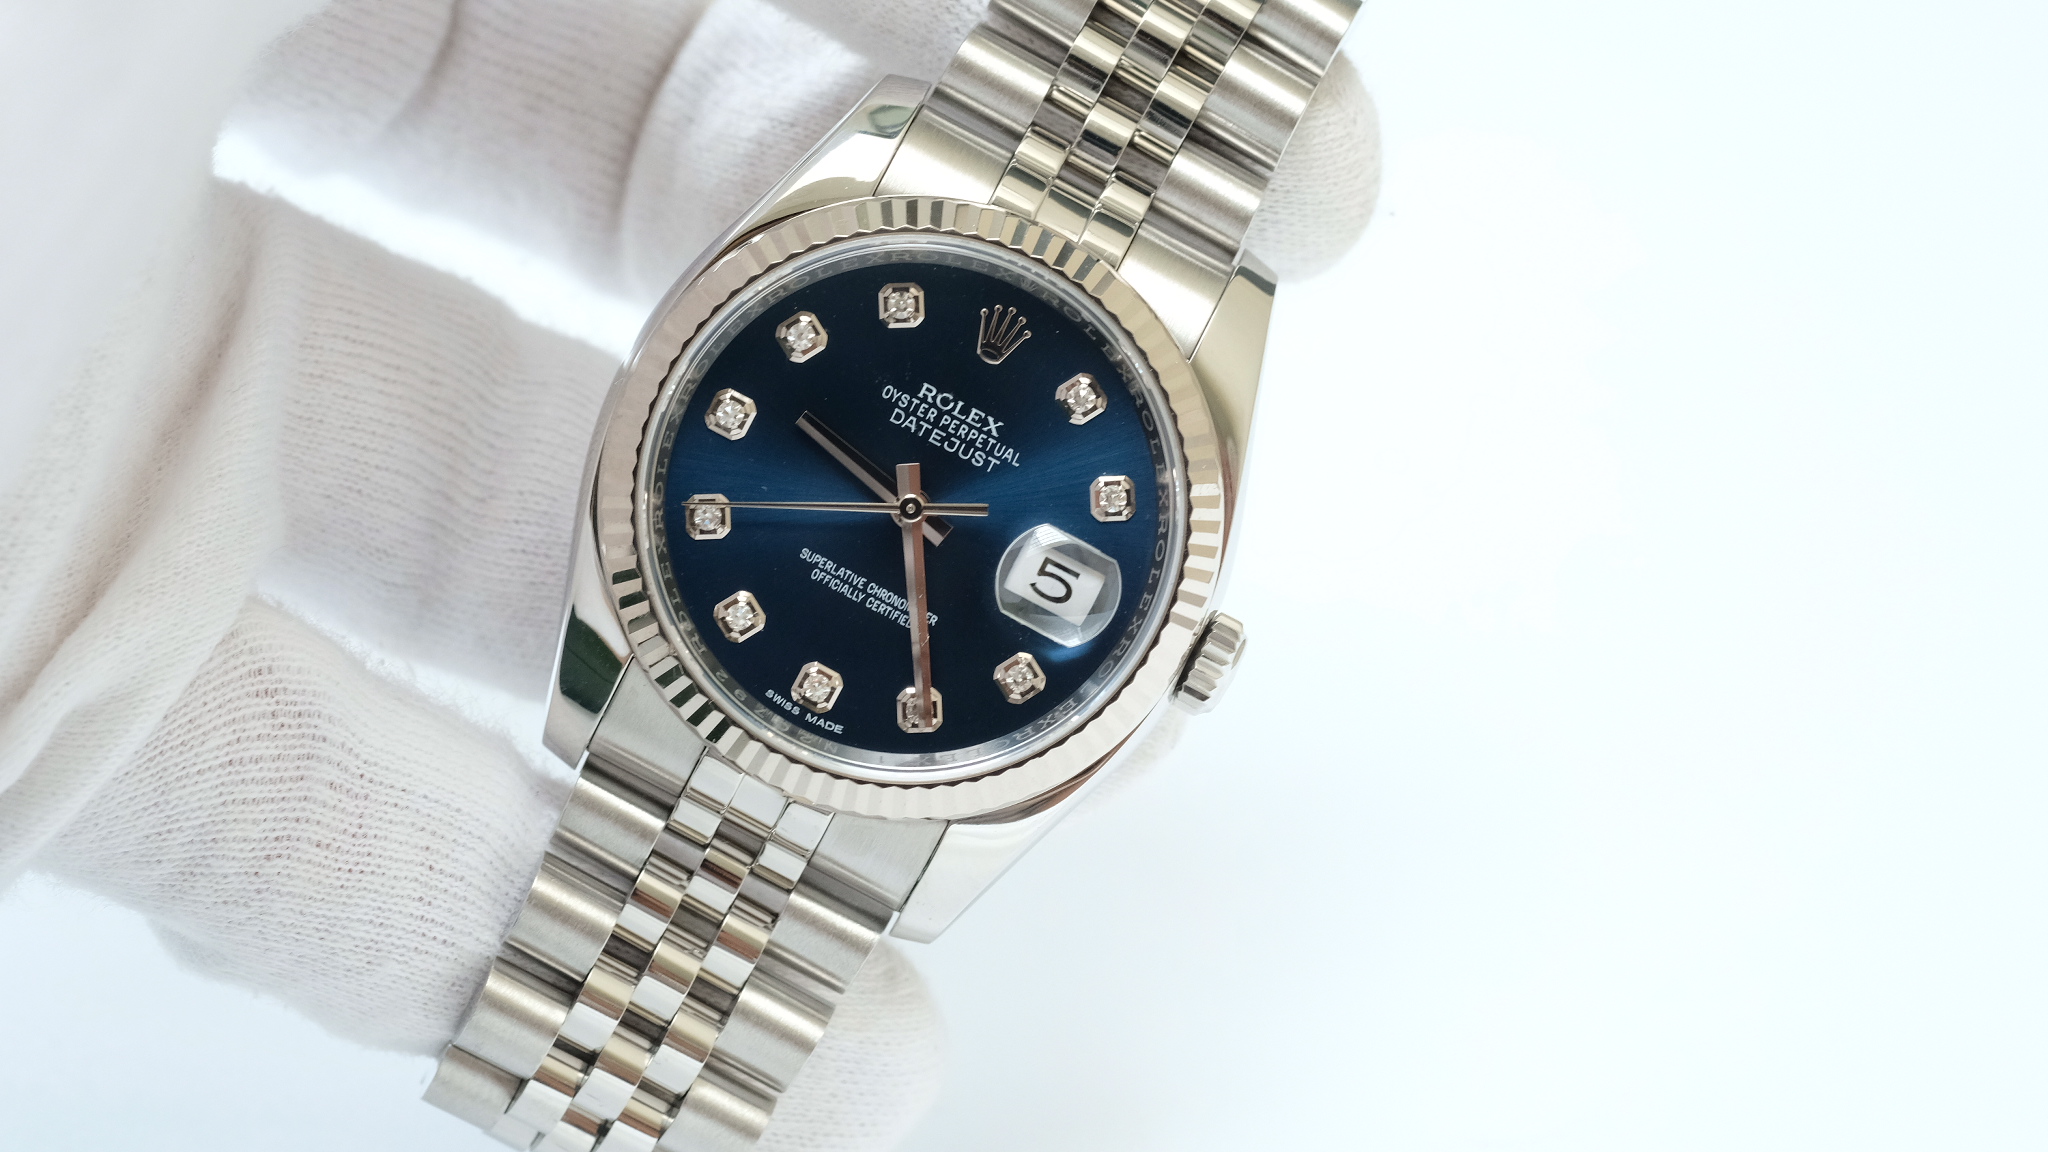 Thời điểm Rolex giới thiệu các mẫu và bộ sưu tập đồng hồ của mình